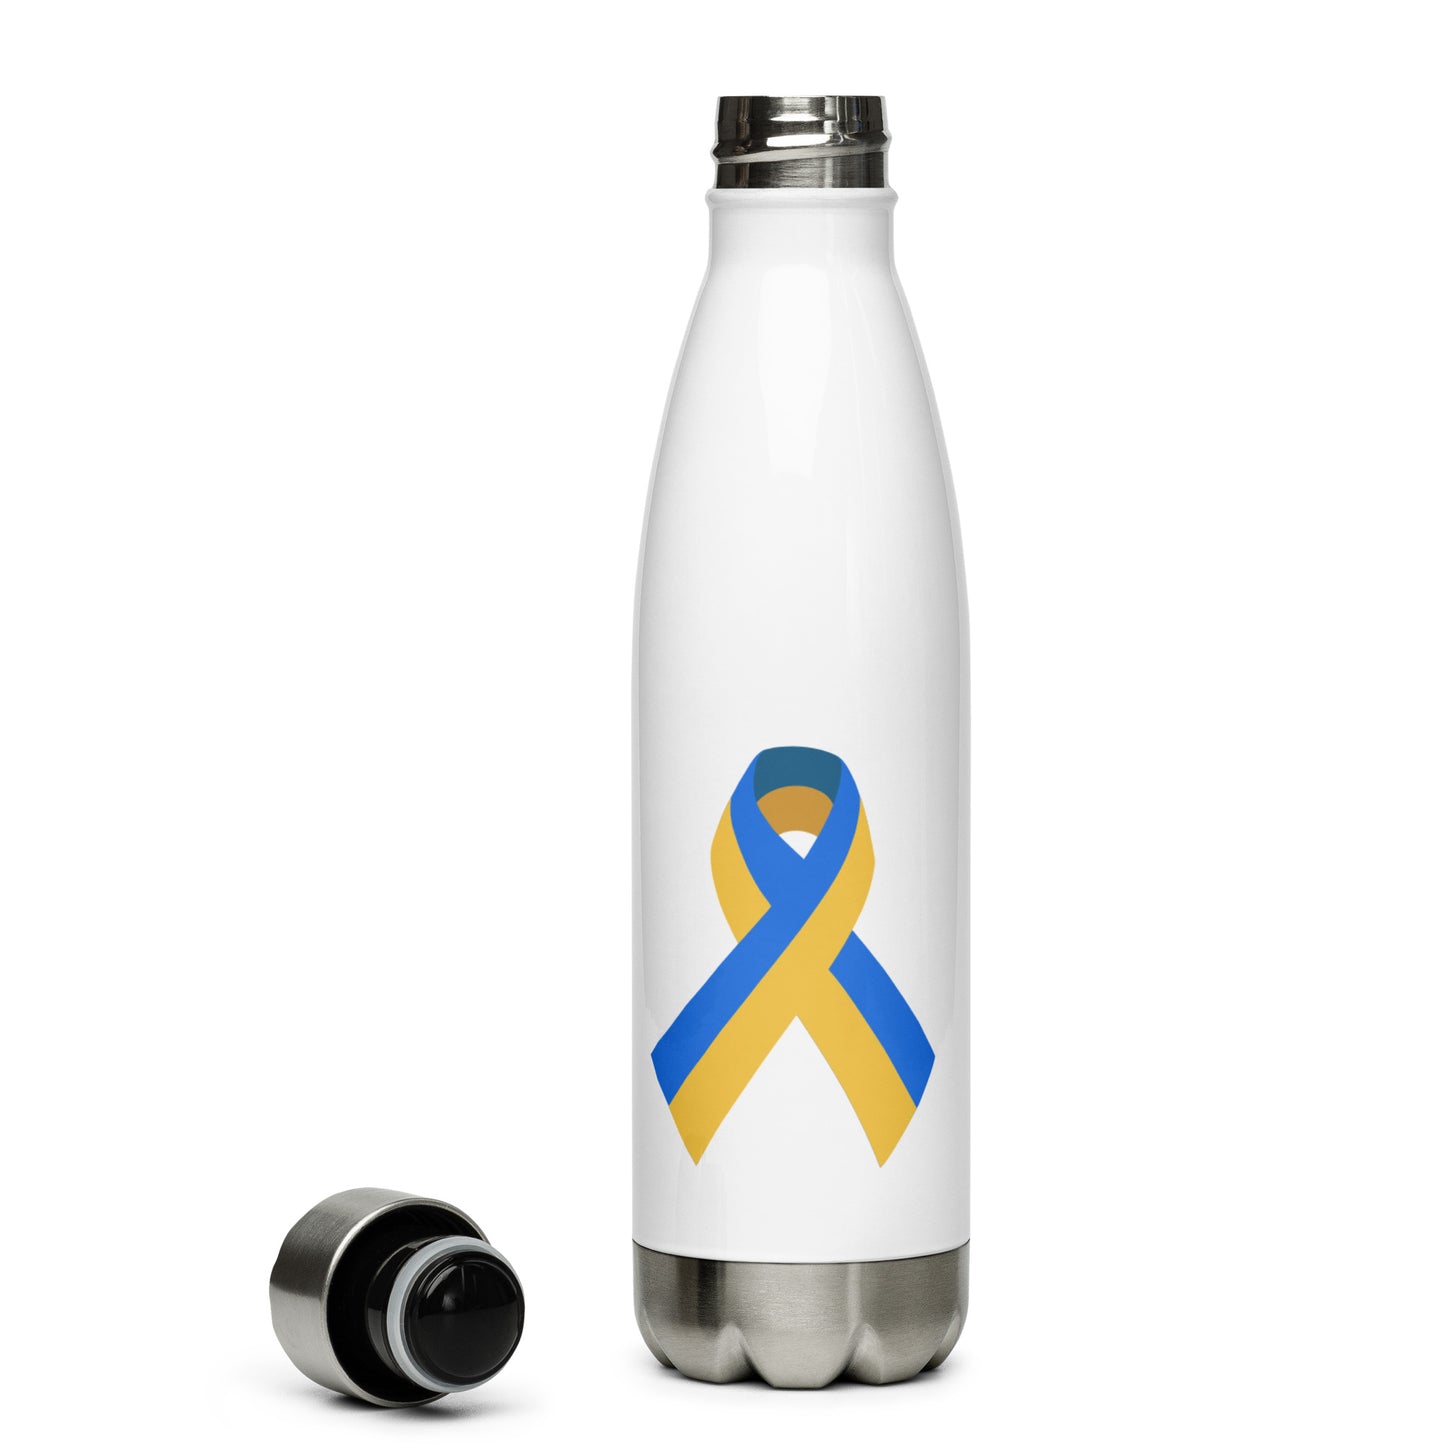 Ukrainian Water Bottle